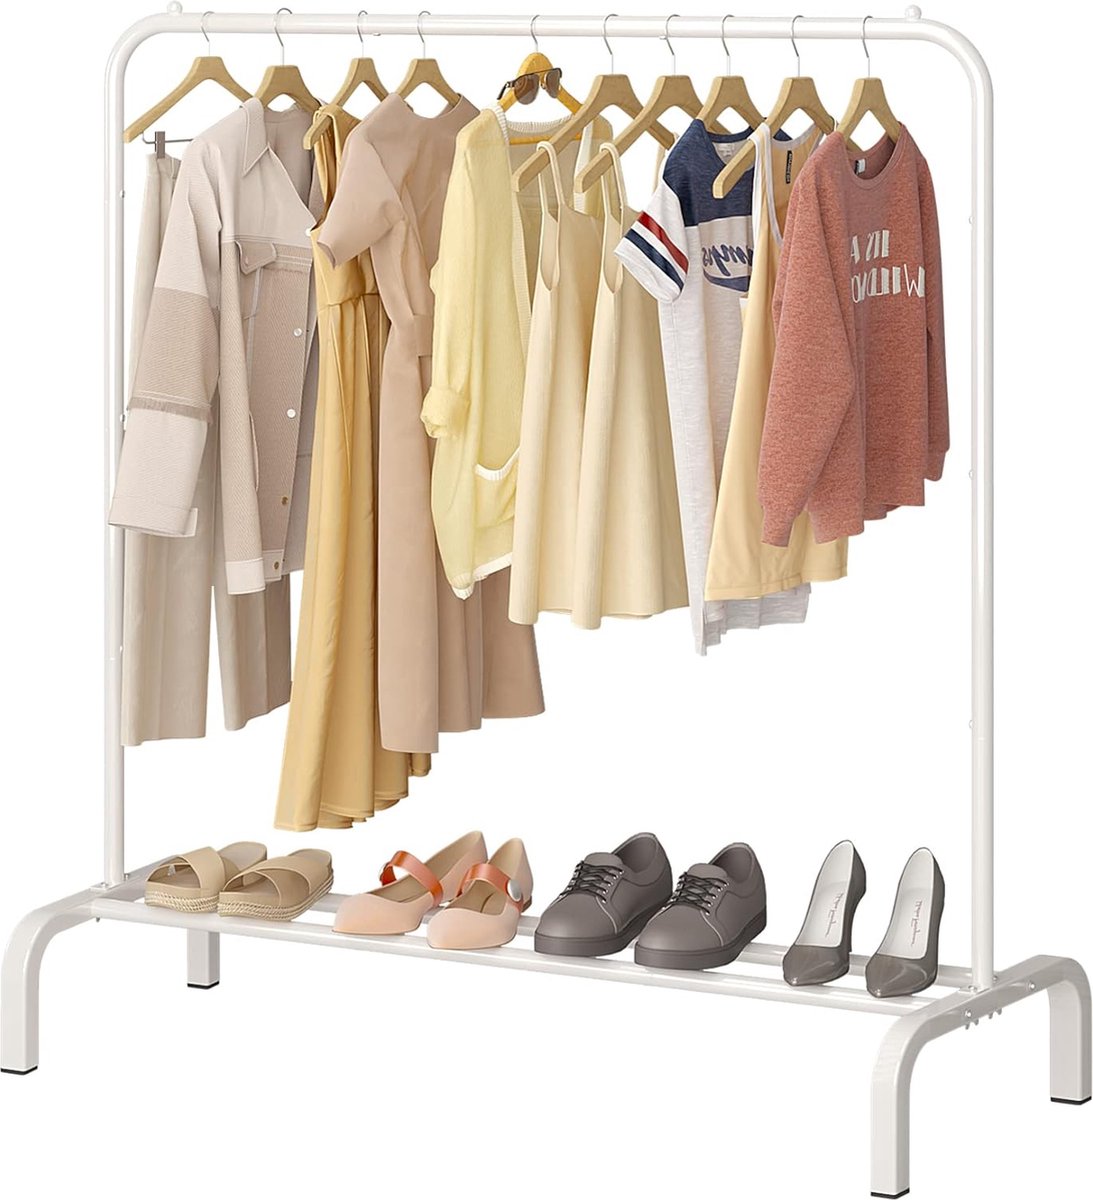 metalen kledingstang 110 cm, kledingstang, kledingstang met bodemrek voor jassen, rokken, overhemden, truien, wit